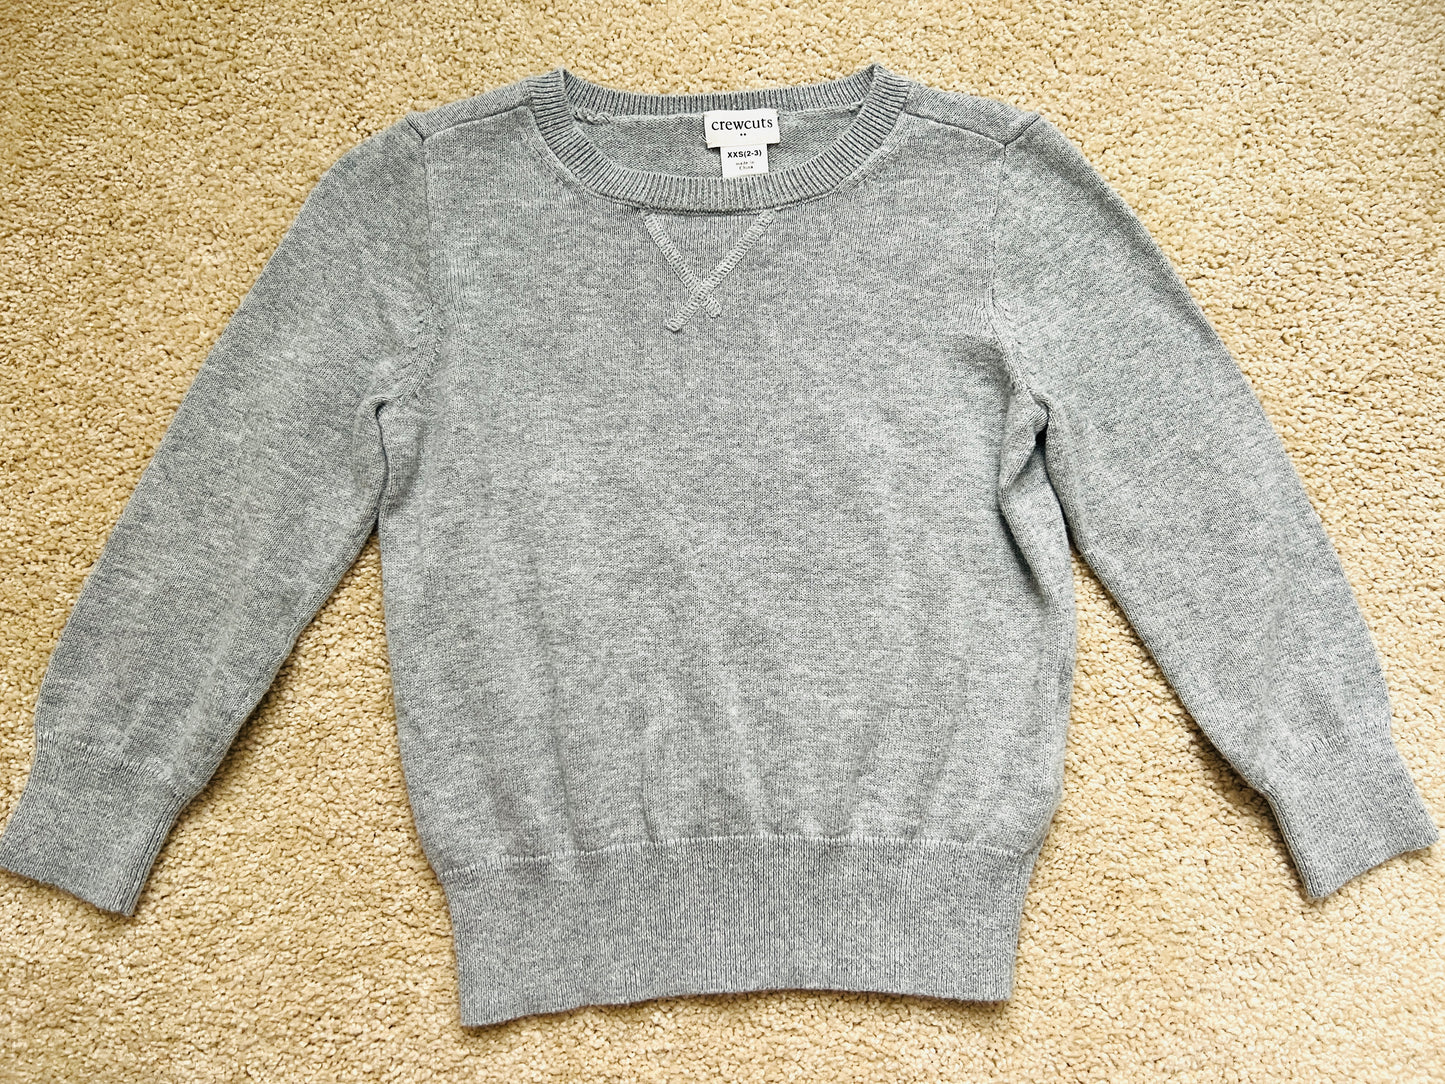 Crewcuts sweater, 2-3 yr, GUC